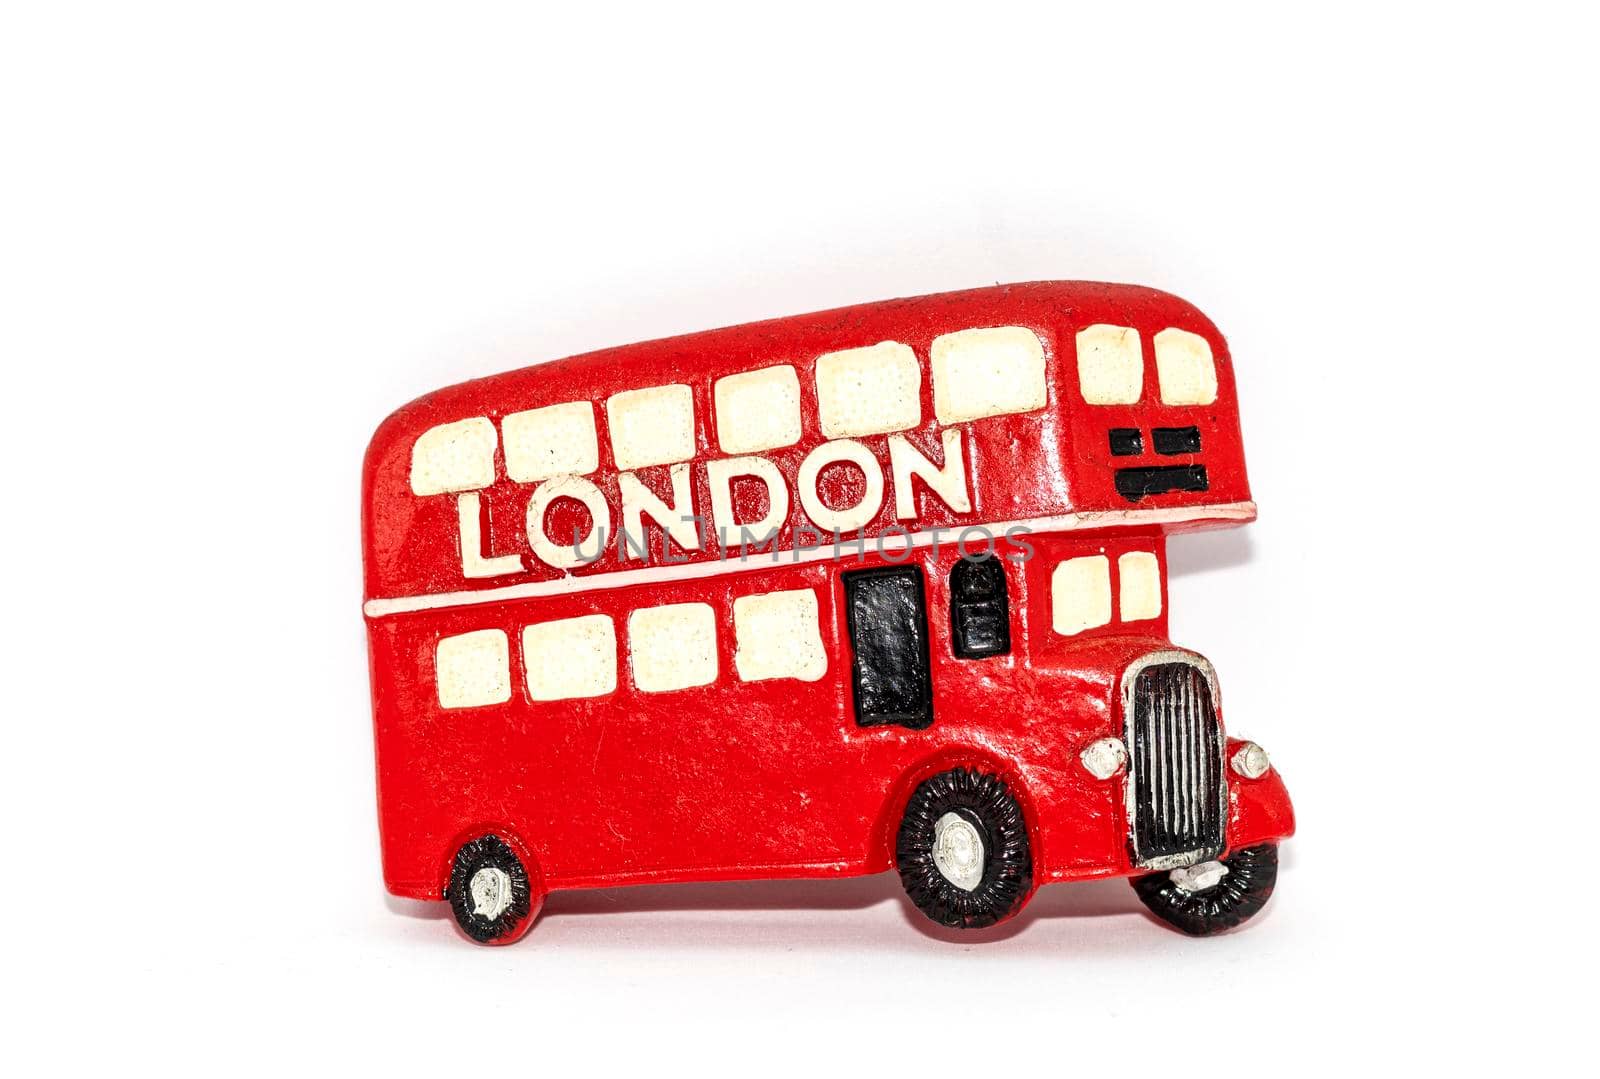 A souvenir magnet with the London bus